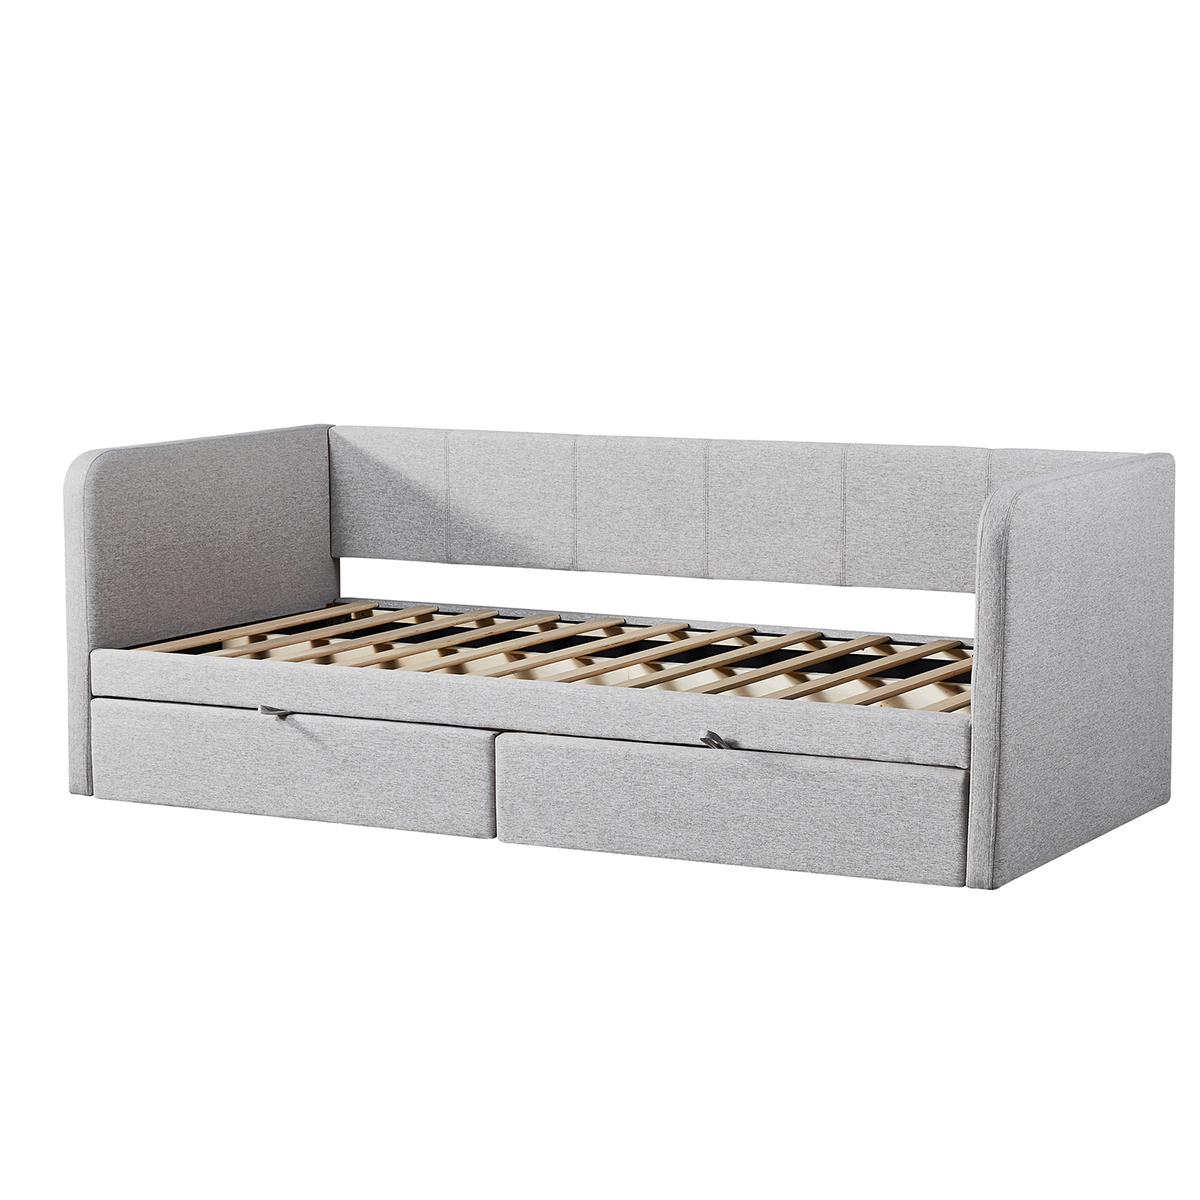  Interiax Liam Bed - Comfort Beige Inclusief 2 schuiven en lattenbodem (90 x 200 cm) 